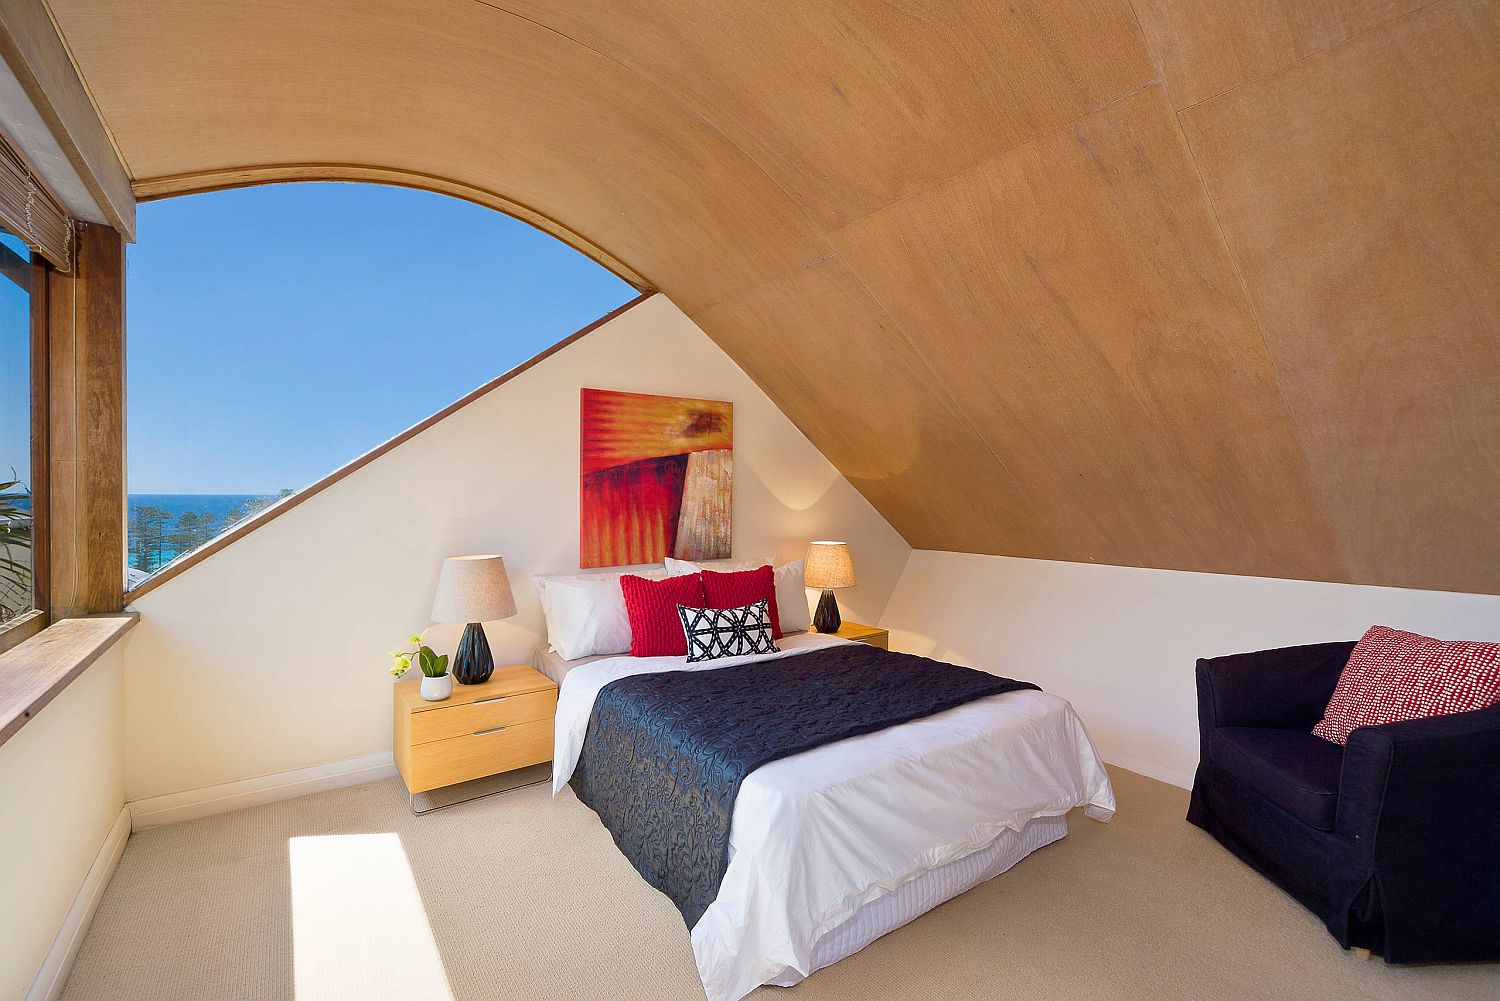 Hình ảnh phòng ngủ nhỏ trên tầng áp mái với trần gỗ cong mềm mại, giường nệm màu trắng, cửa sổ kính lớn